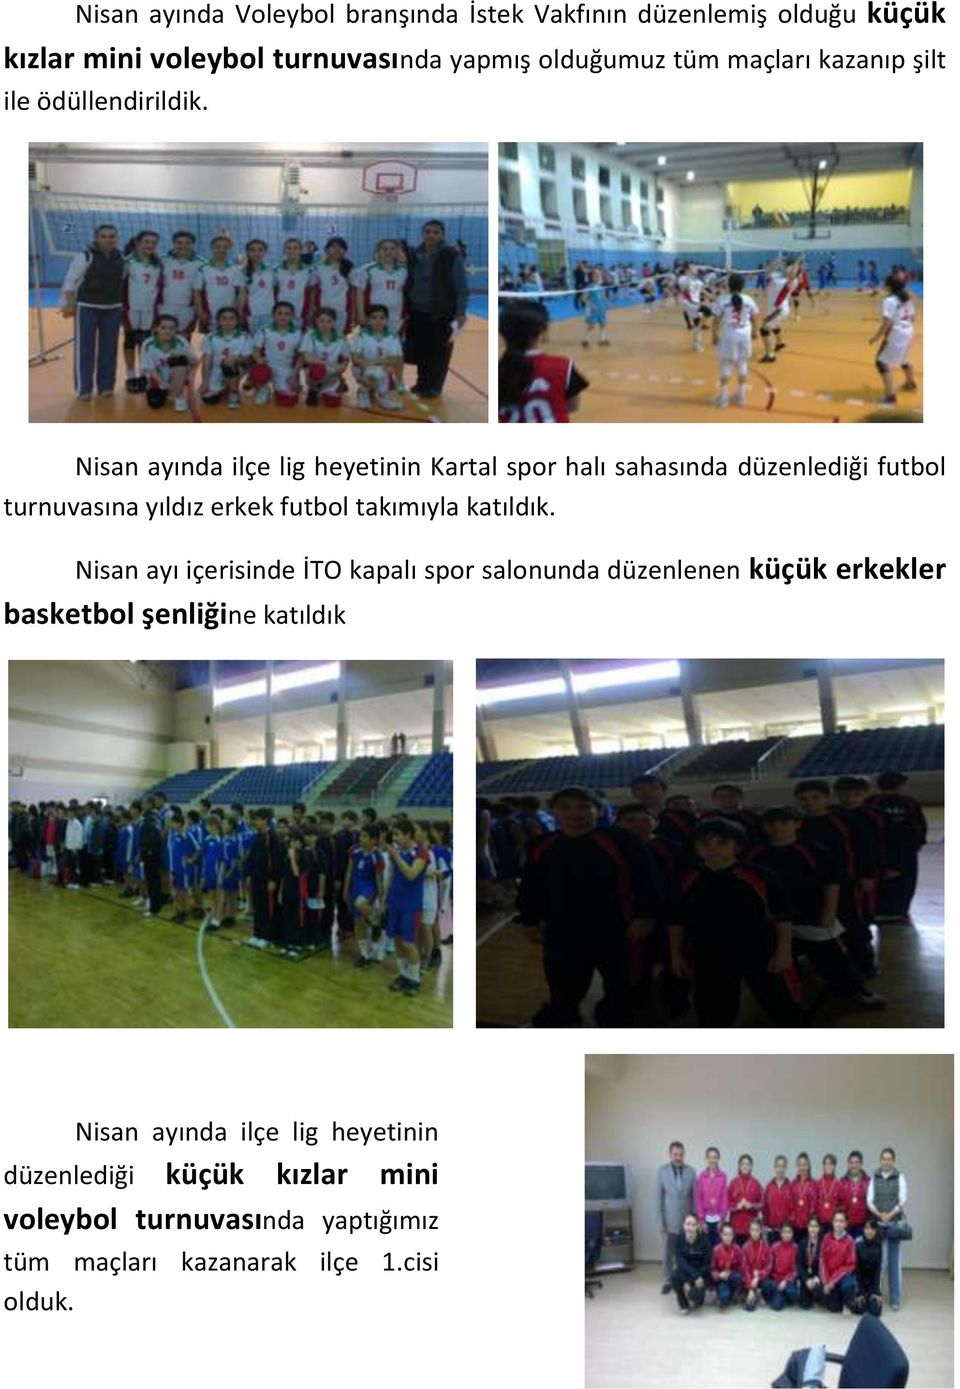 Nisan ayında ilçe lig heyetinin Kartal spor halı sahasında düzenlediği futbol turnuvasına yıldız erkek futbol takımıyla katıldık.